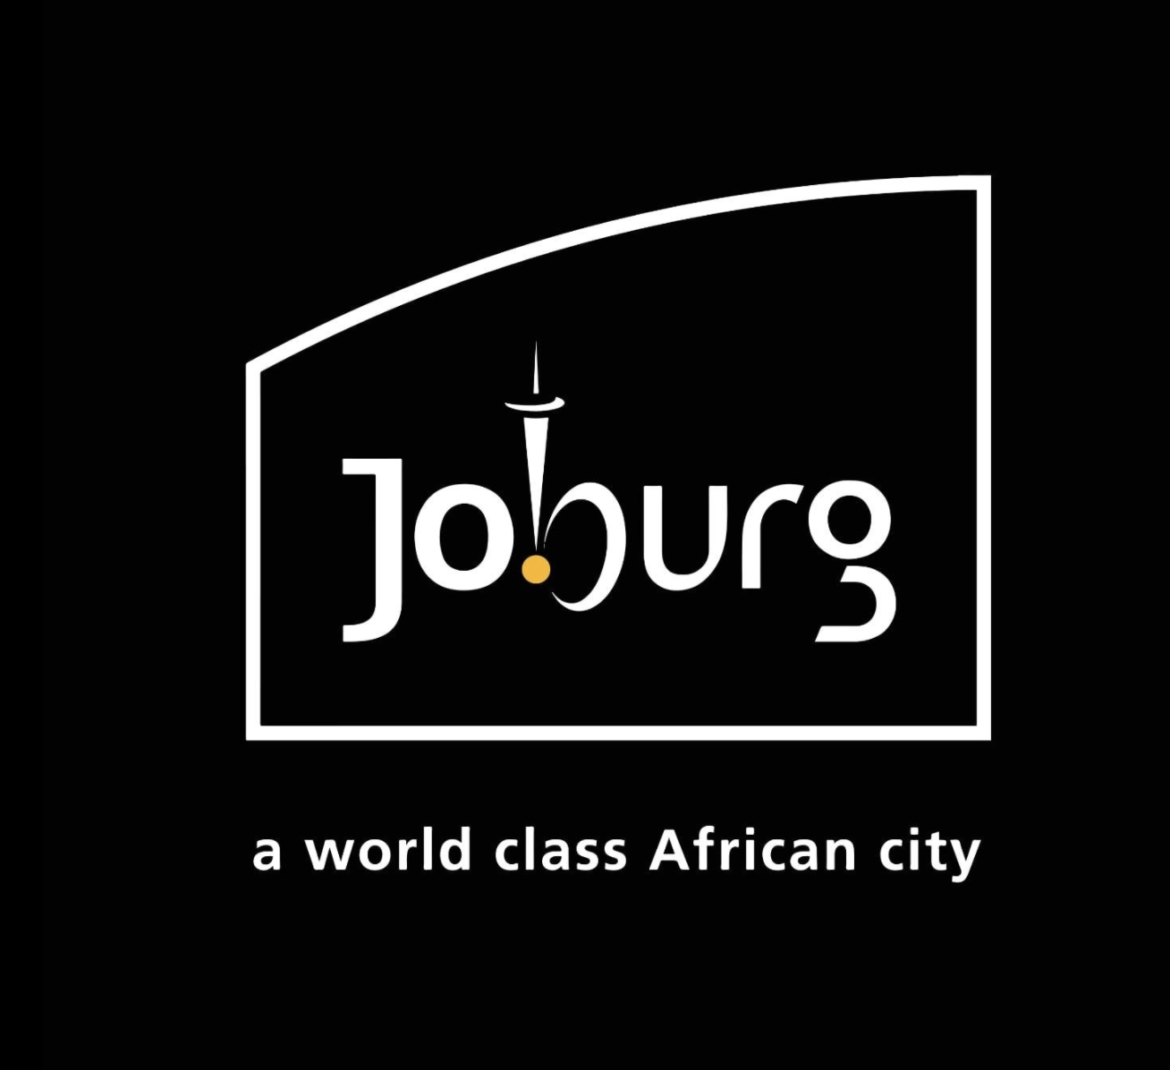 City of Joburg